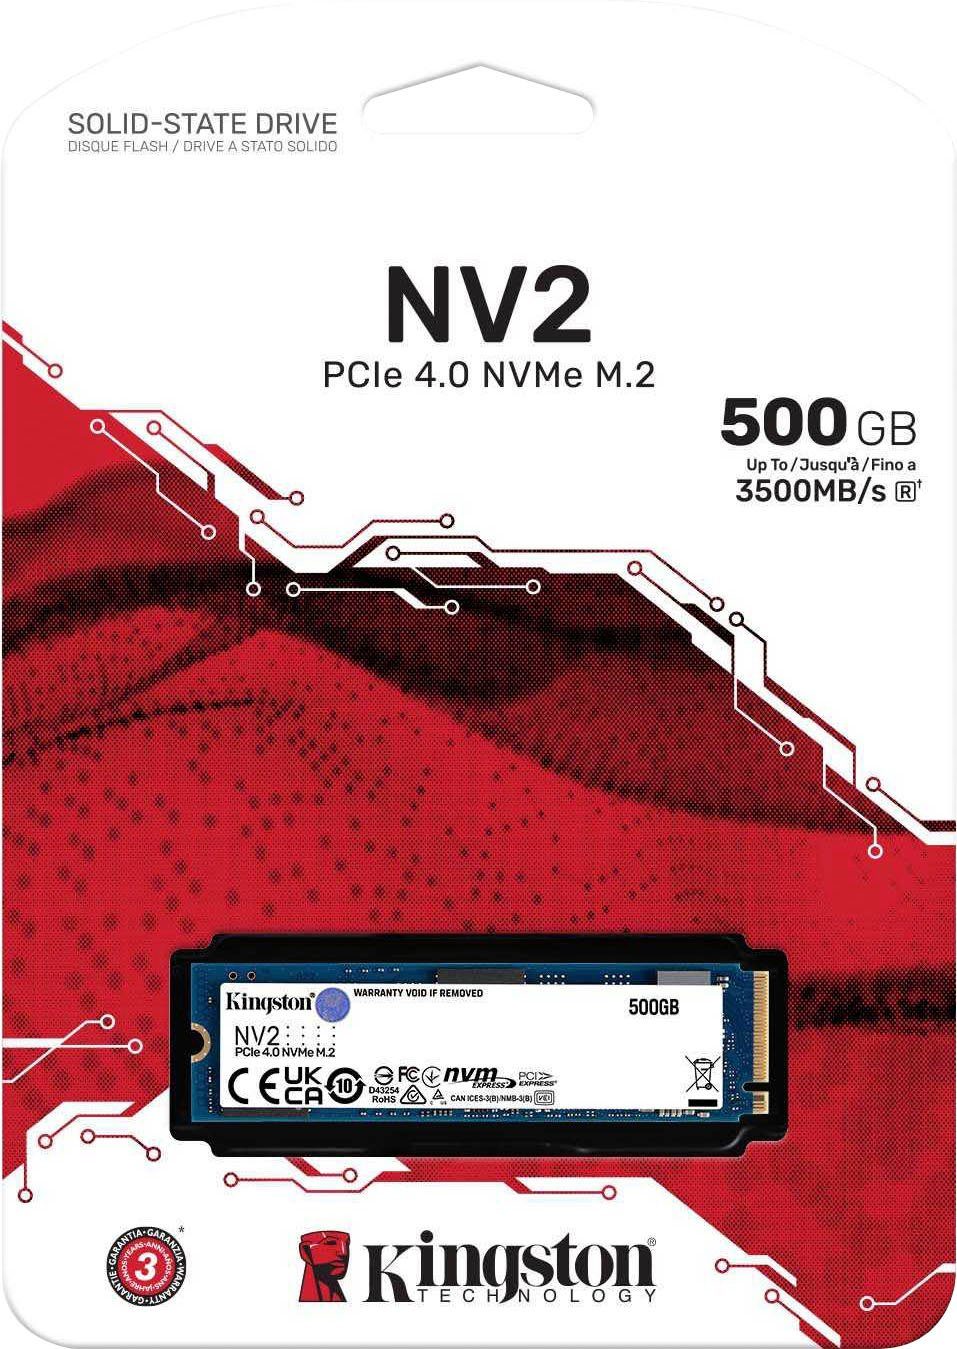 Kingston NV2 PCIe 4.0 NVMe SSD 1000GB interne SSD (1000 GB) 3500 MB/S  Lesegeschwindigkeit, 2100 MB/S Schreibgeschwindigkeit, Ideal für Laptops  und PCs mit kleinem Formfaktor